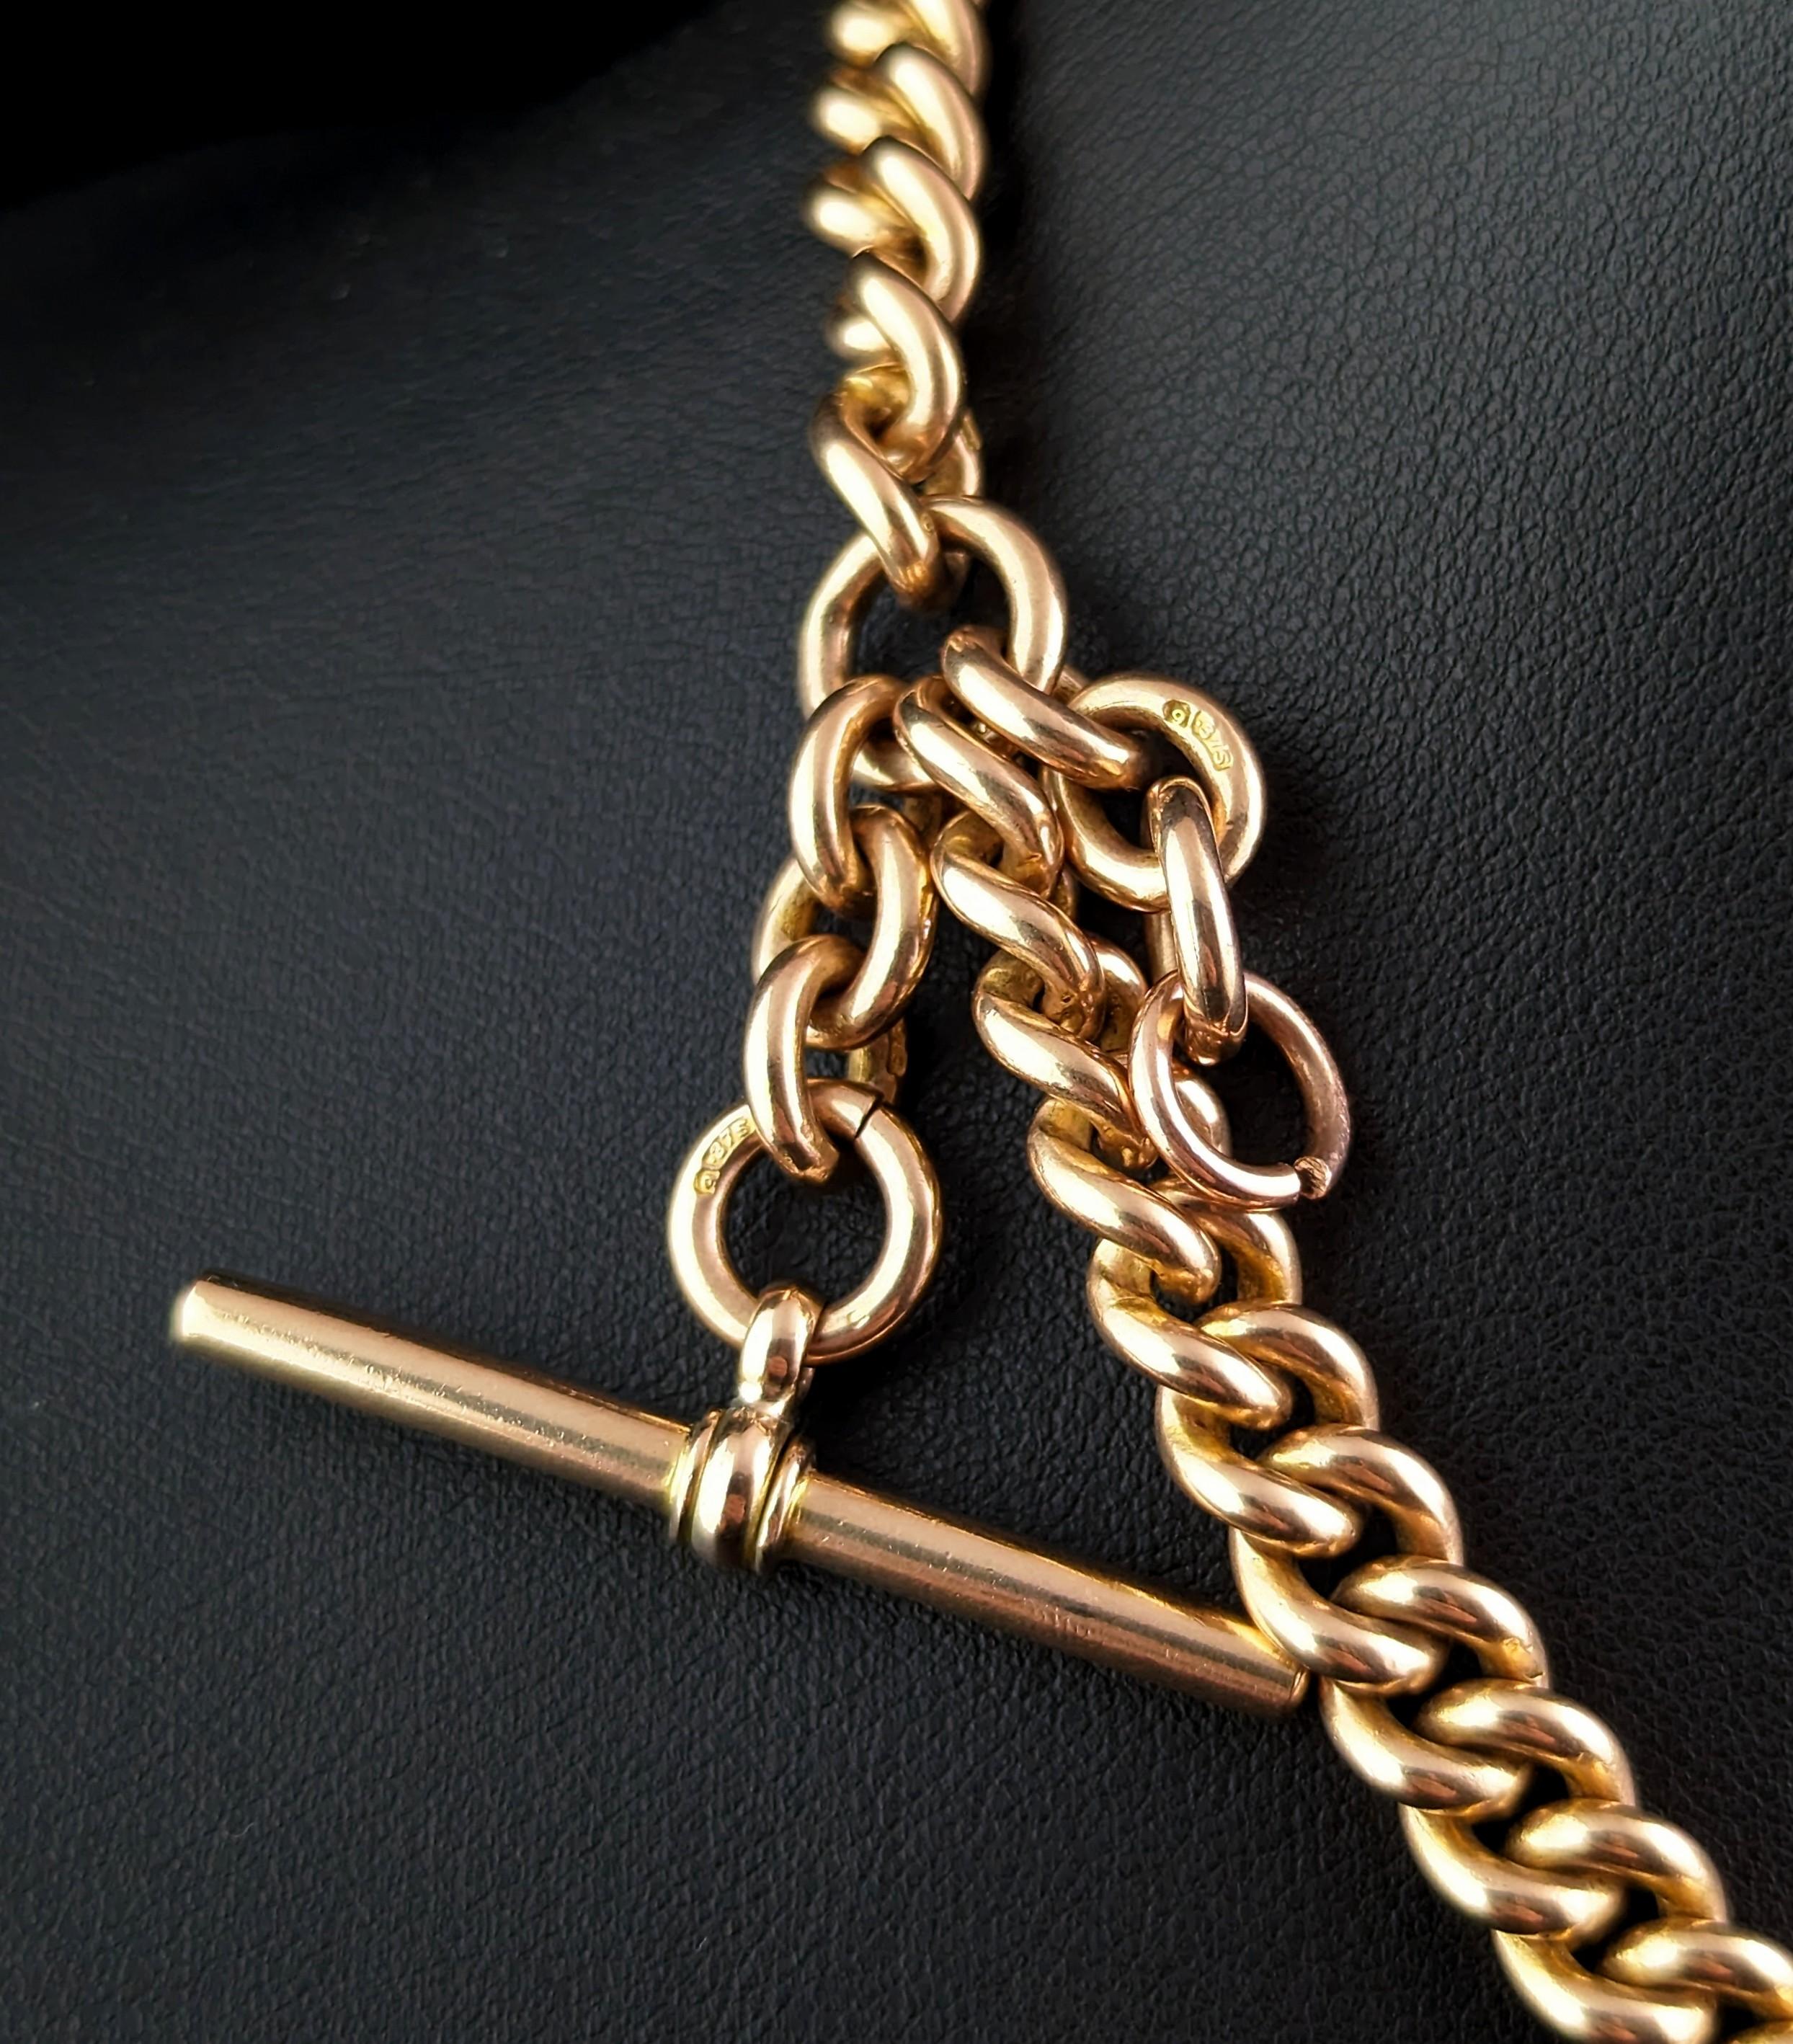 Antique 9k gold Albert chain necklace, watch chain, Heavy  2